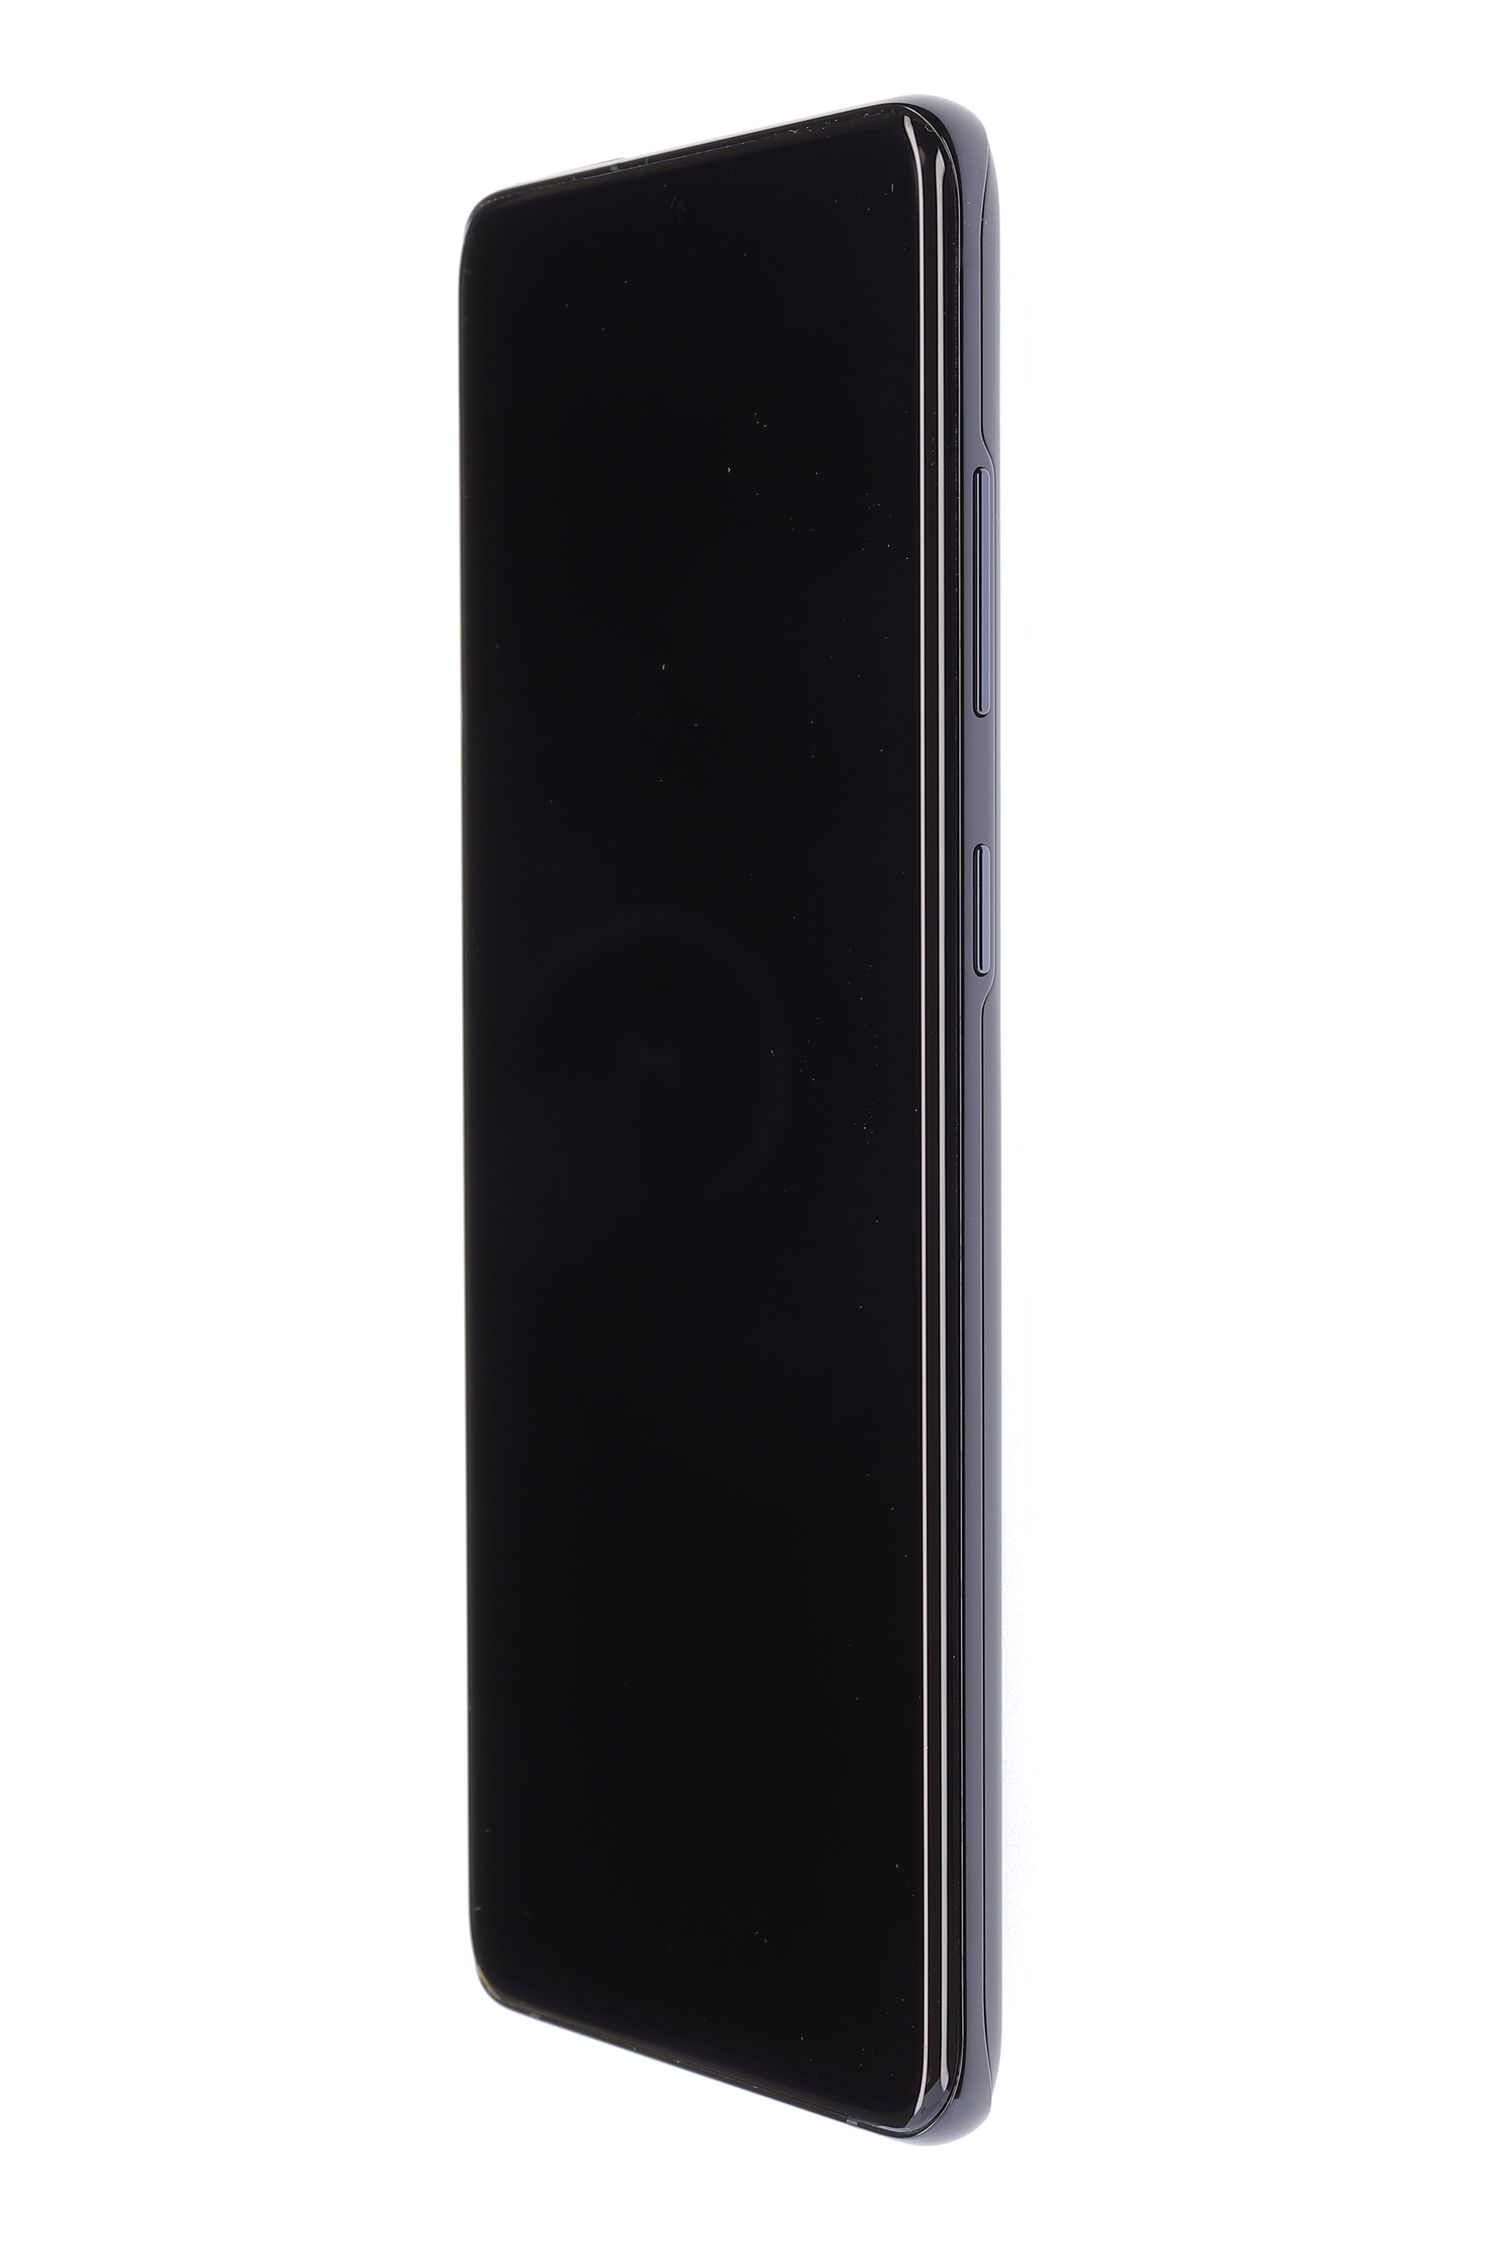 Telefon mobil Samsung Galaxy S20 Plus, Cosmic Black, 256 GB, Bun